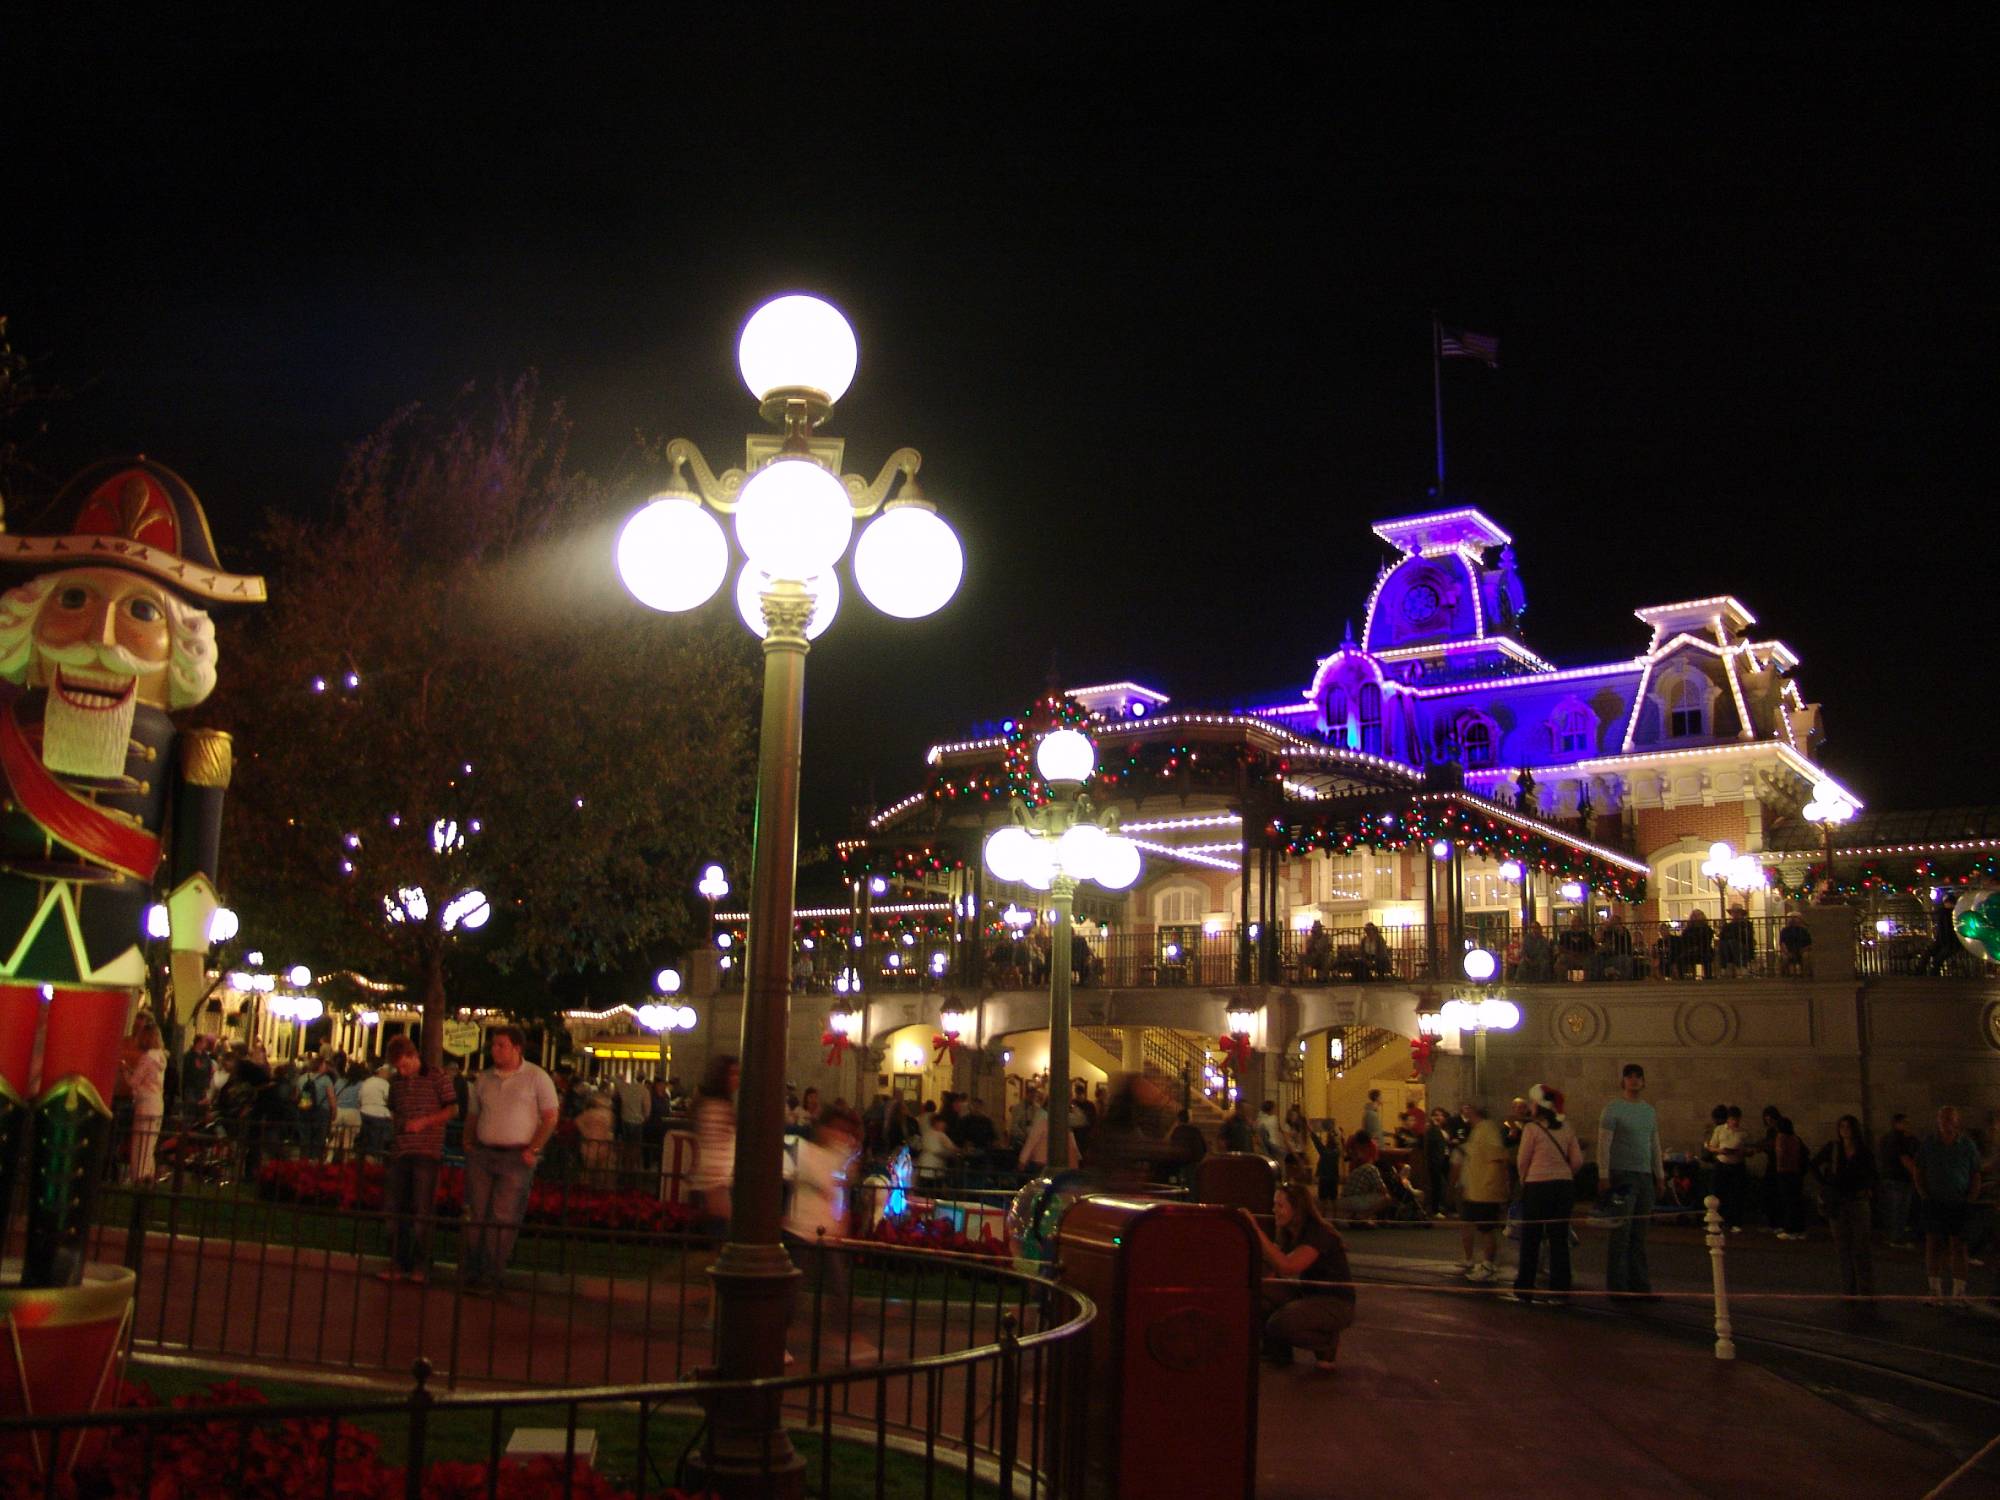 Magic Kingdom - Main Street at night